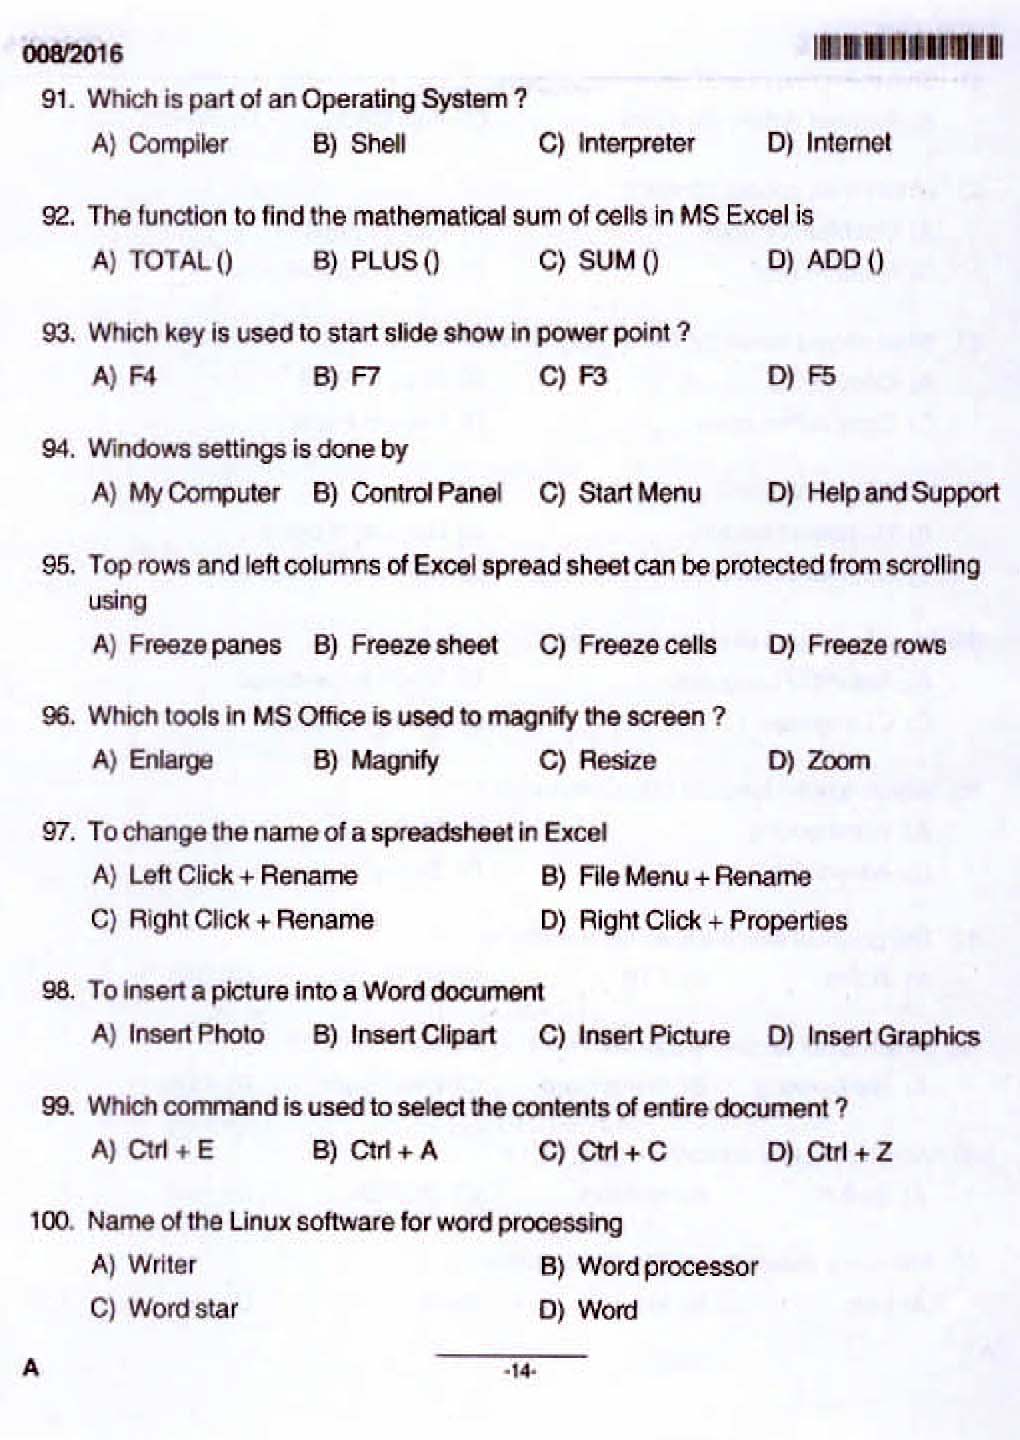 Kerala PSC Junior Assistant Exam 2016 Question Paper Code 0082016 12